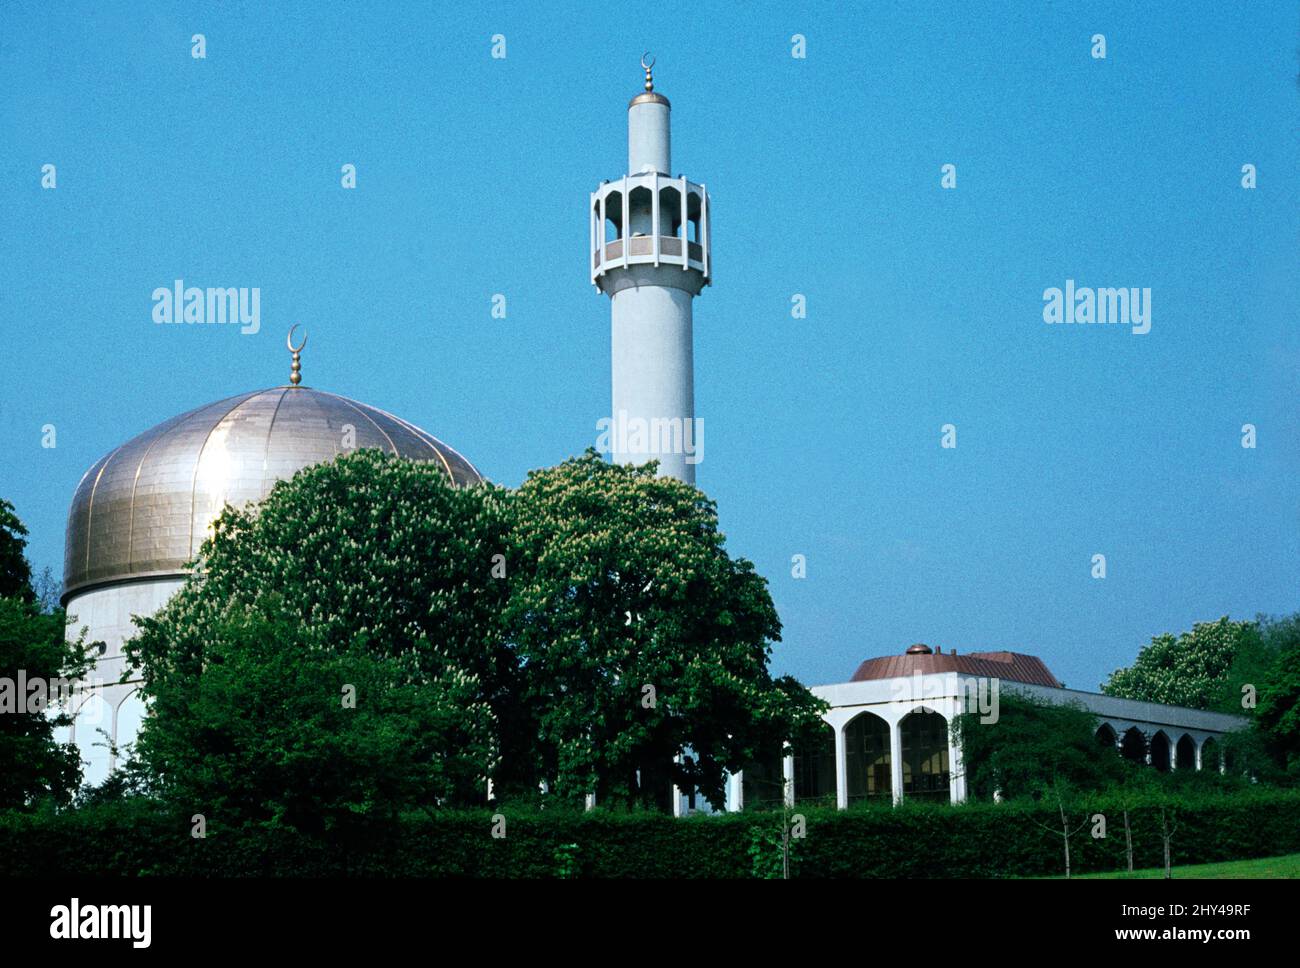 London England Regents Park Mosque Dome & Minaret Stock Photo